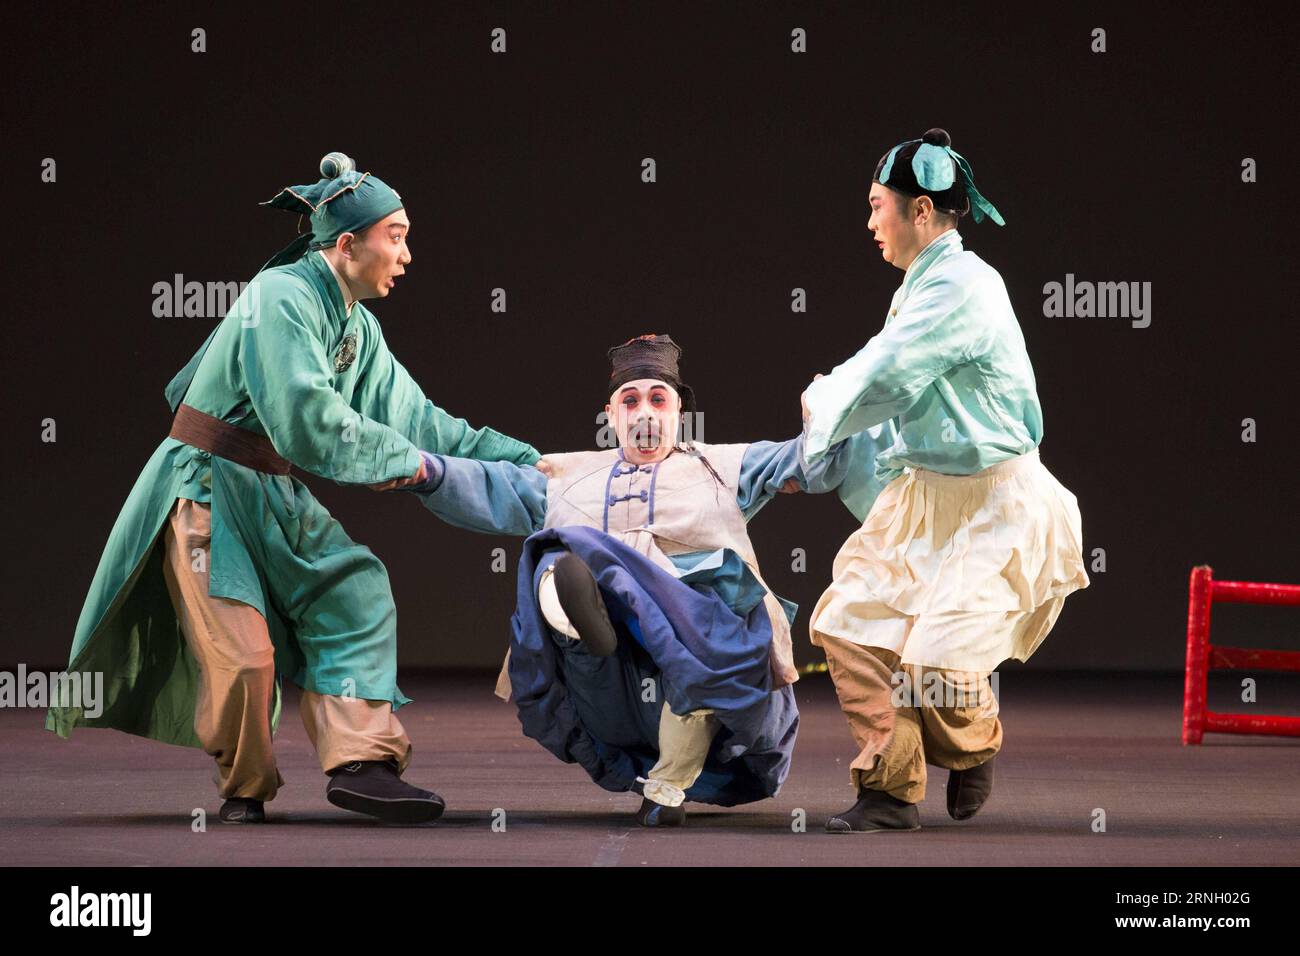 GUANAJUATO, le 17 octobre 2016 -- des acteurs de l'Opéra de Pékin jouent pendant la pièce Don Quichotte, errant Knigh à Guanajuato, Mexique, le 17 octobre 2016. Des artistes de l'Opéra de Pékin de la province chinoise du Guizhou présentent une pièce basée sur l'œuvre la plus célèbre de l'écrivain espagnol Miguel de Cervantes Saavedra lundi lors du 44e Festival international de Cervantino.Leopoldo Smith Murill) (dtf) MEXICO-GUANAJUATO-CHINA-CULTURE-EVENT LEOPOLDOXSMITHxMURILLO PUBLICATIONxNOTxINxCHN Guanajuato OCT 17 2016 les acteurs de l'Opéra de Pékin jouent pendant la pièce Don Quichotte errant Knigh à Guanajuato Mexique LE 17 2016 octobre Beijing Op Banque D'Images